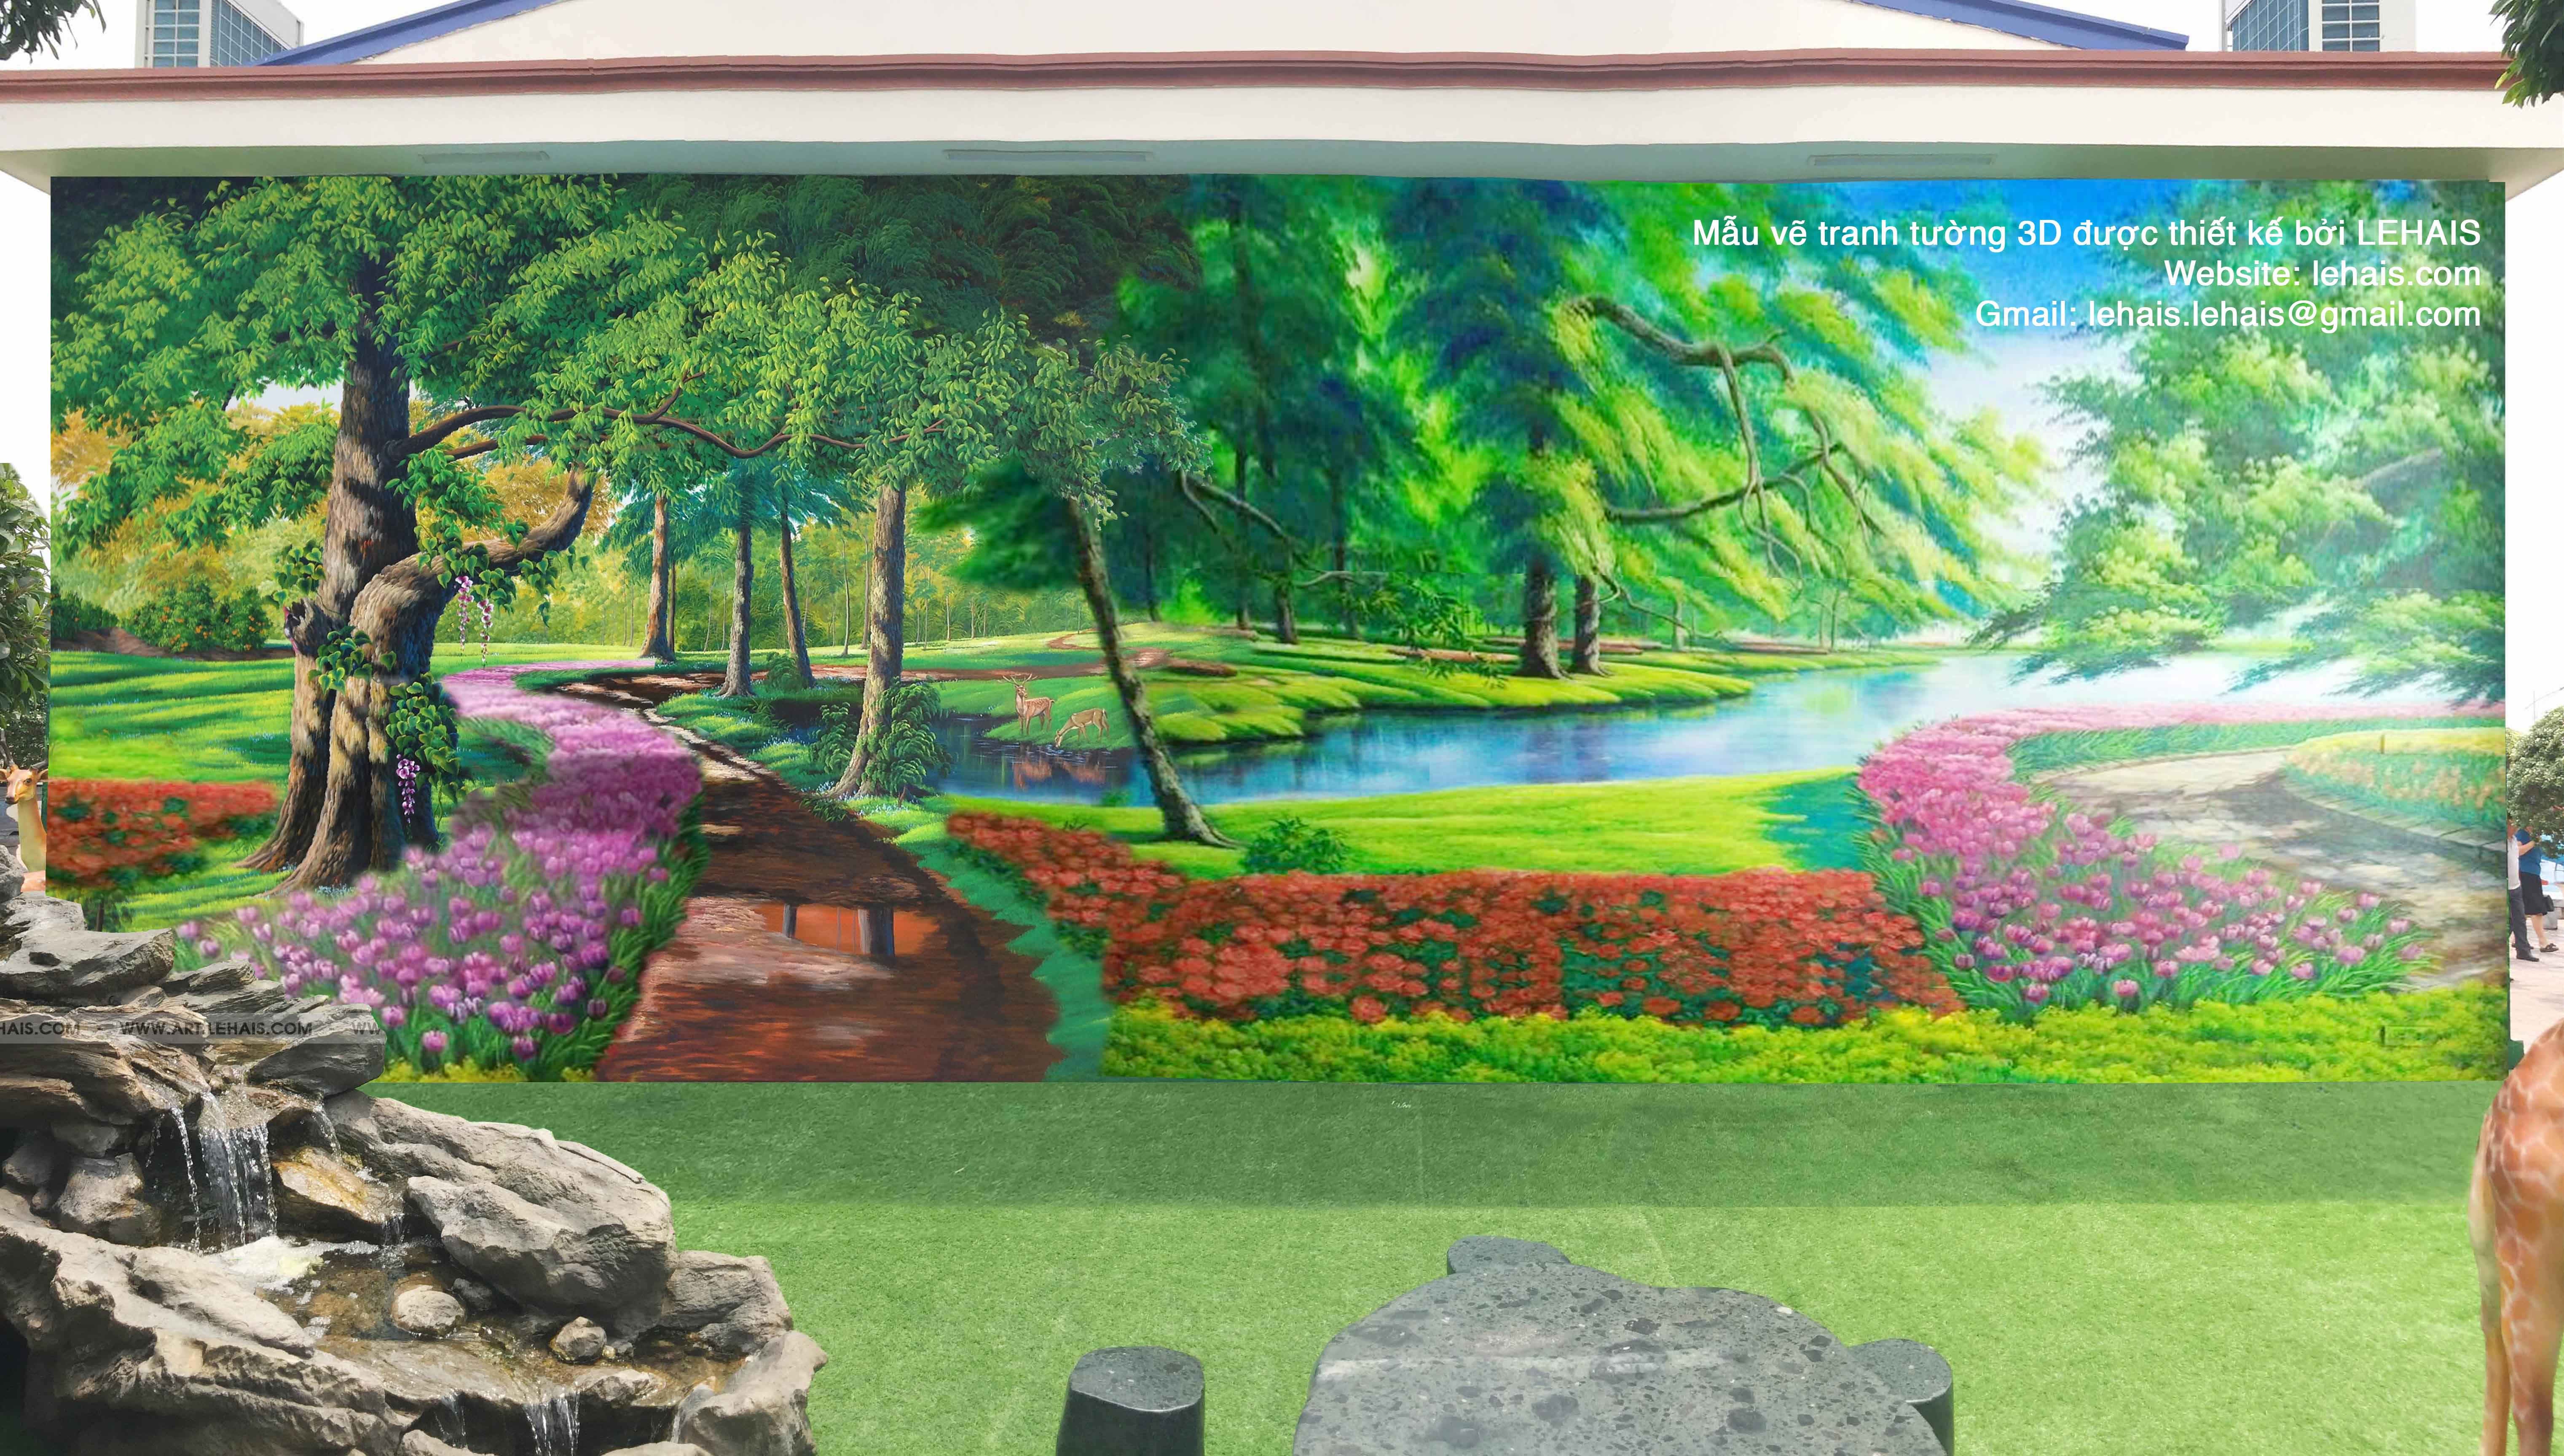 Thiết kế mẫu vẽ tranh tường 3D cho khách hàng tại Sông Công, Thái Nguyên